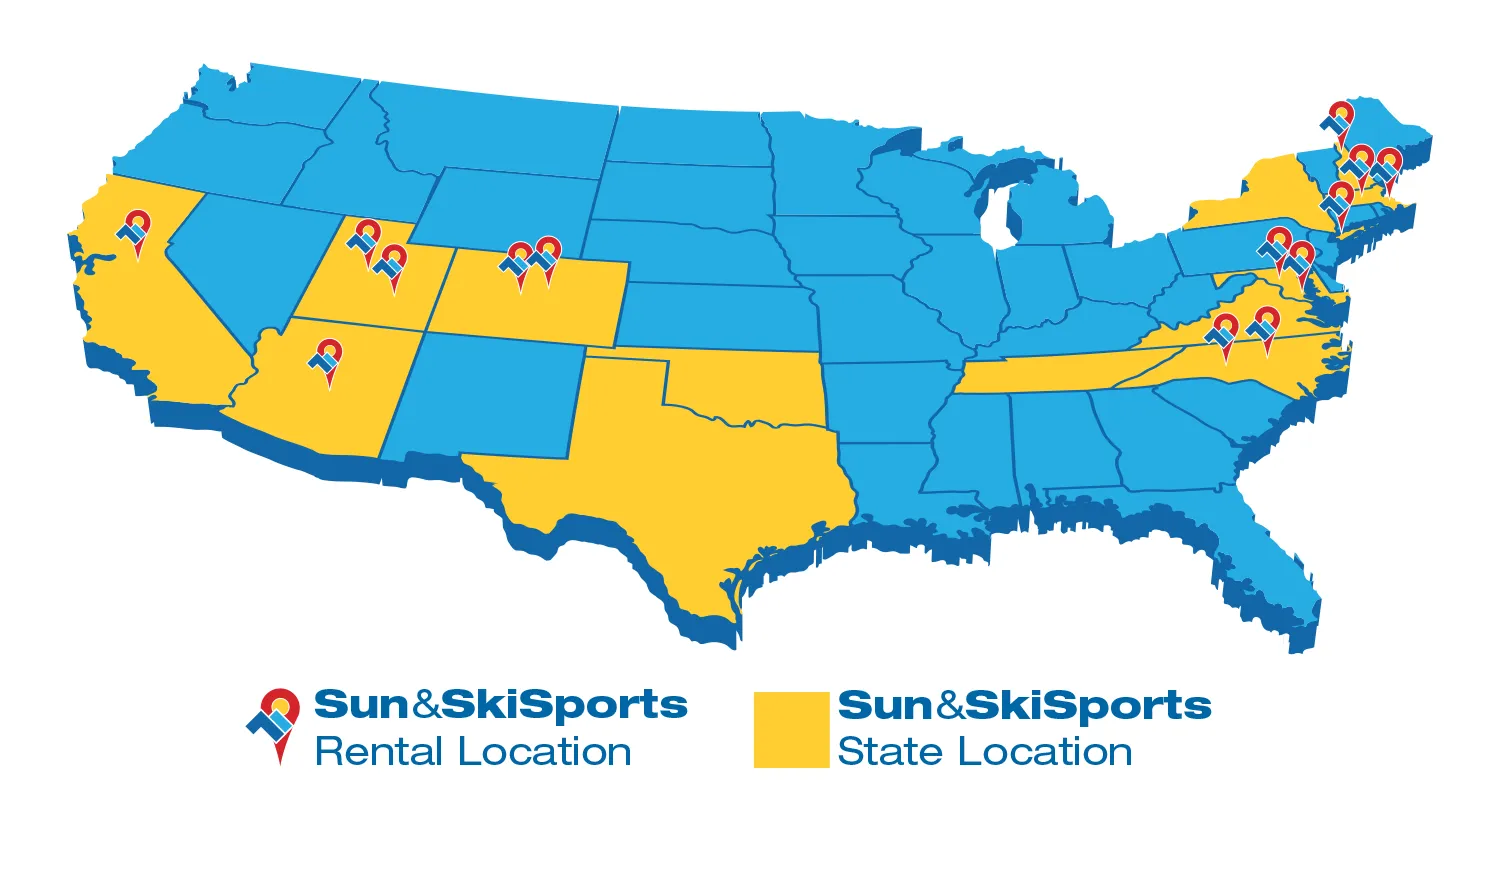 Sun & Ski Sports Rental & Store Locations